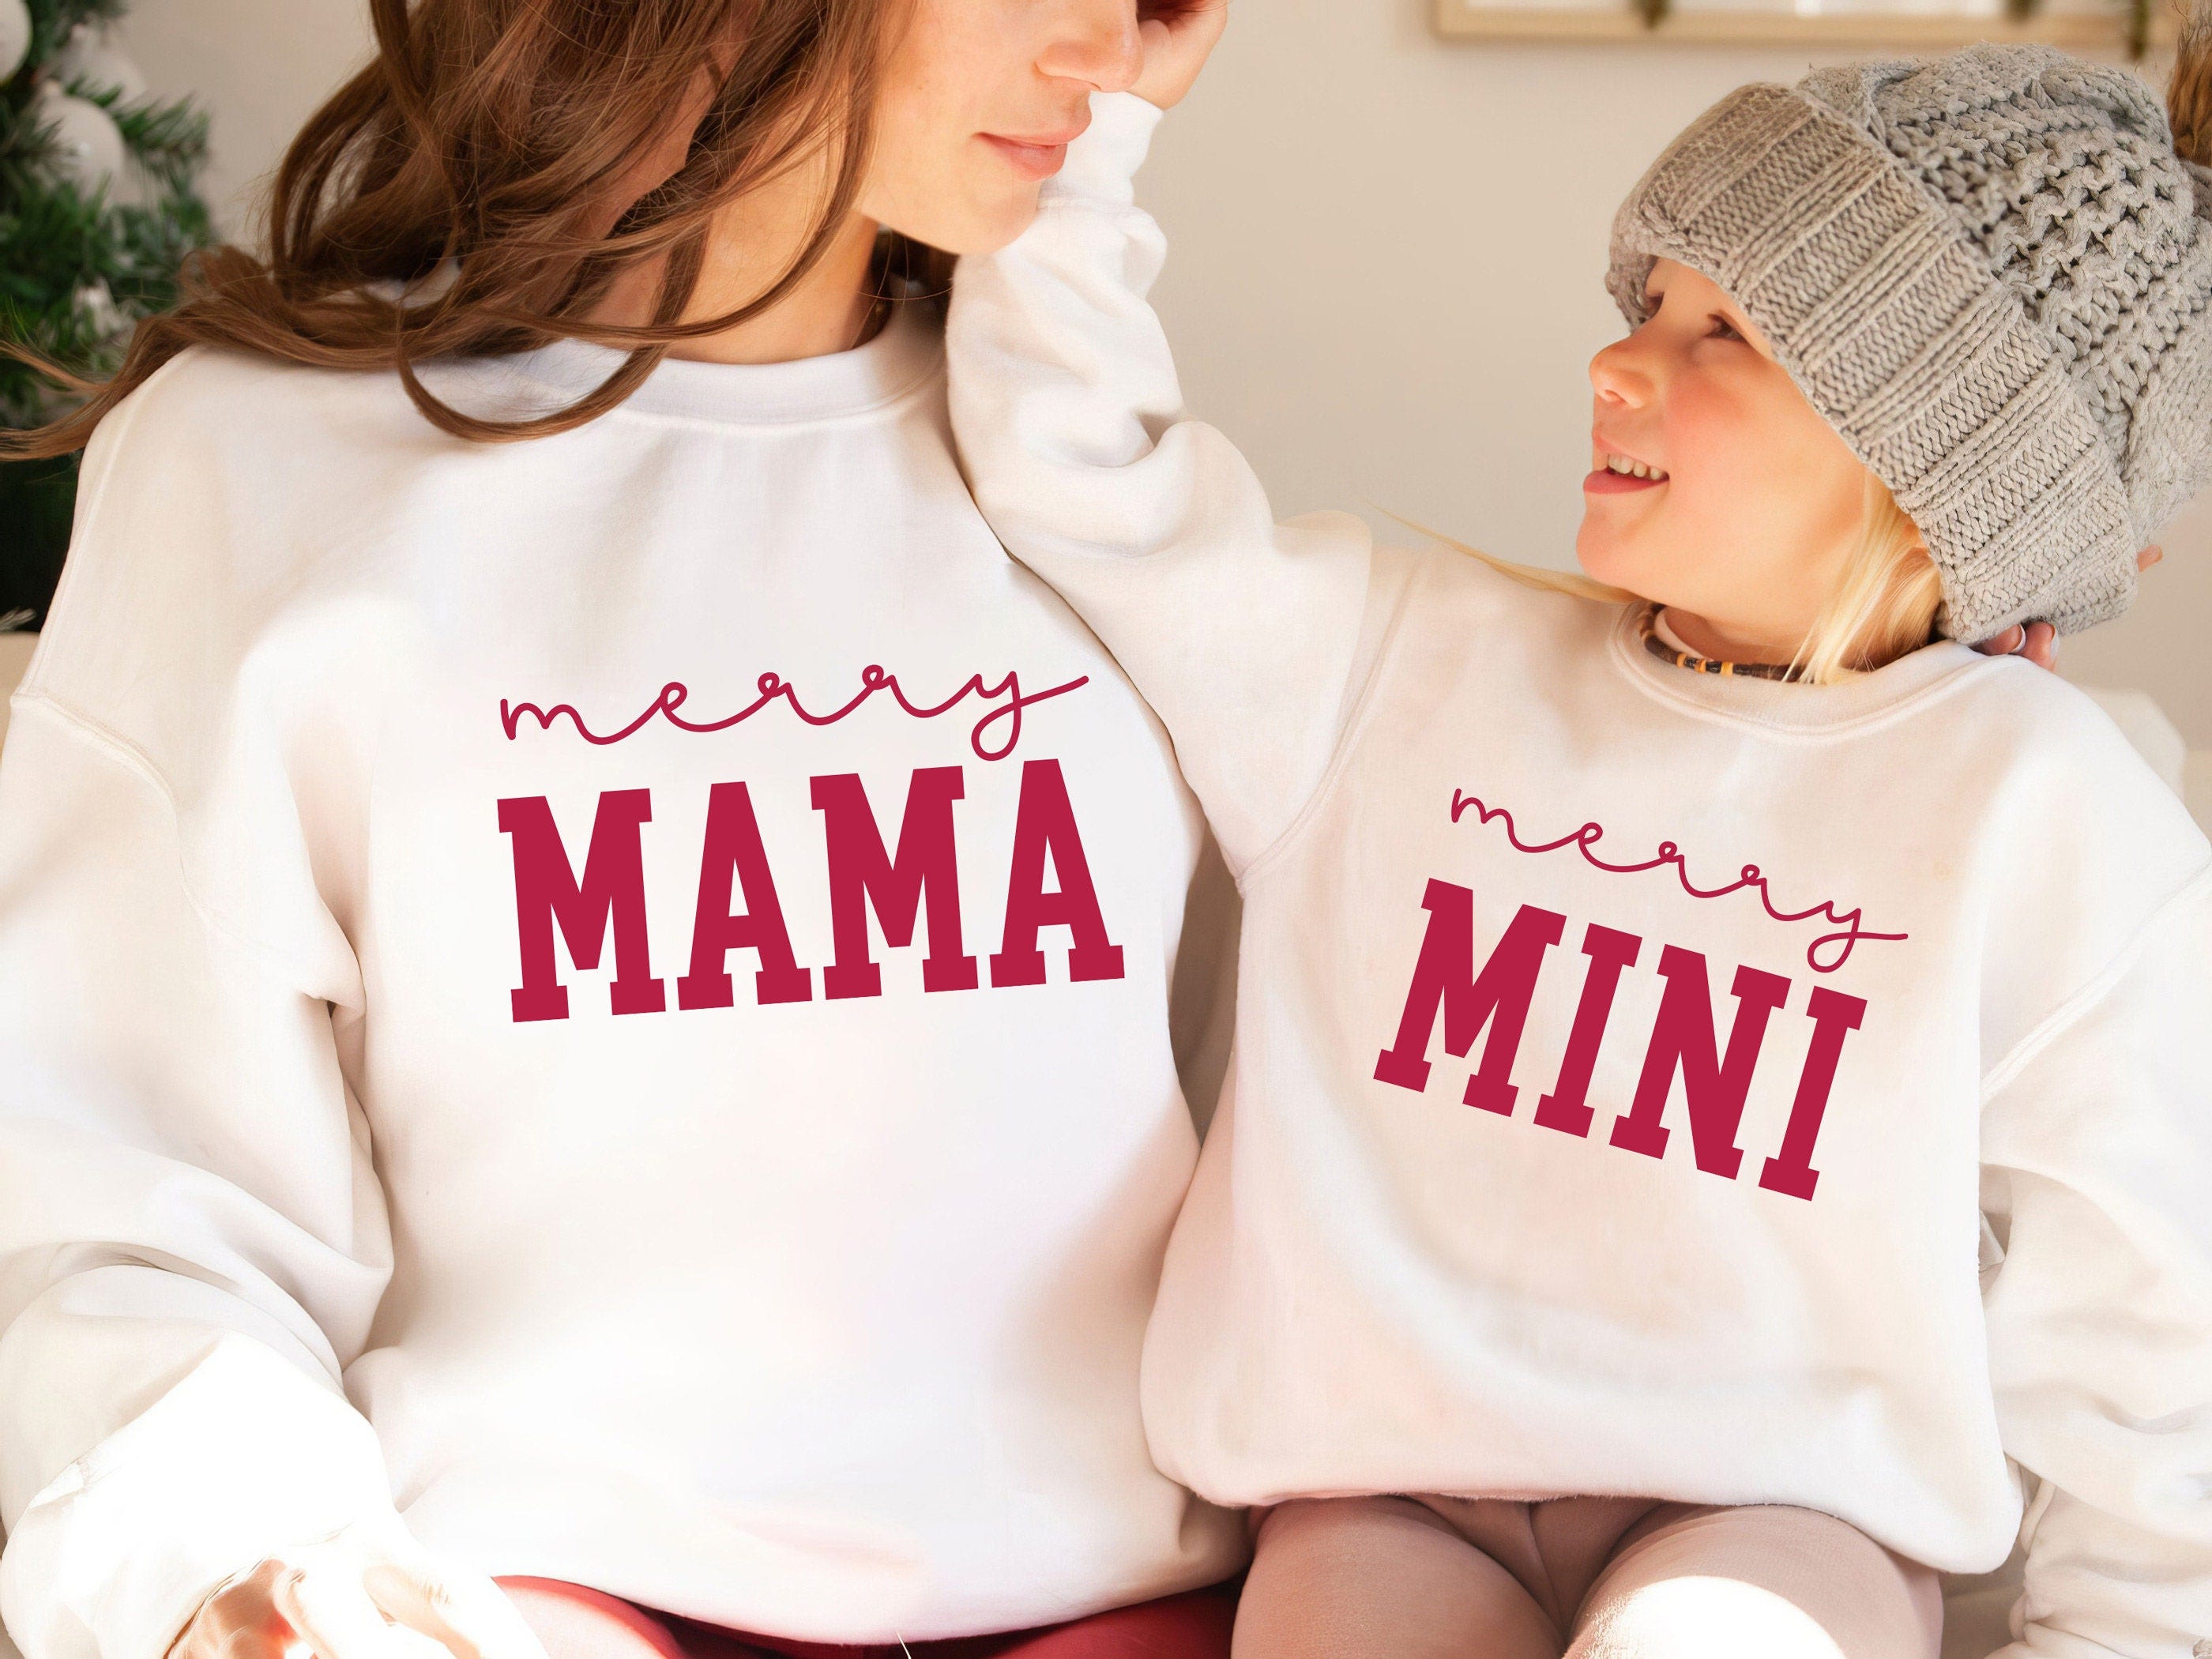 Merry Mama Mini SVG PNG, Mama Mini Matching Christmas Shirt SVG, Mommy and Me Christmas Sweatshirt Svg, Mama and Me Christmas Sublimation